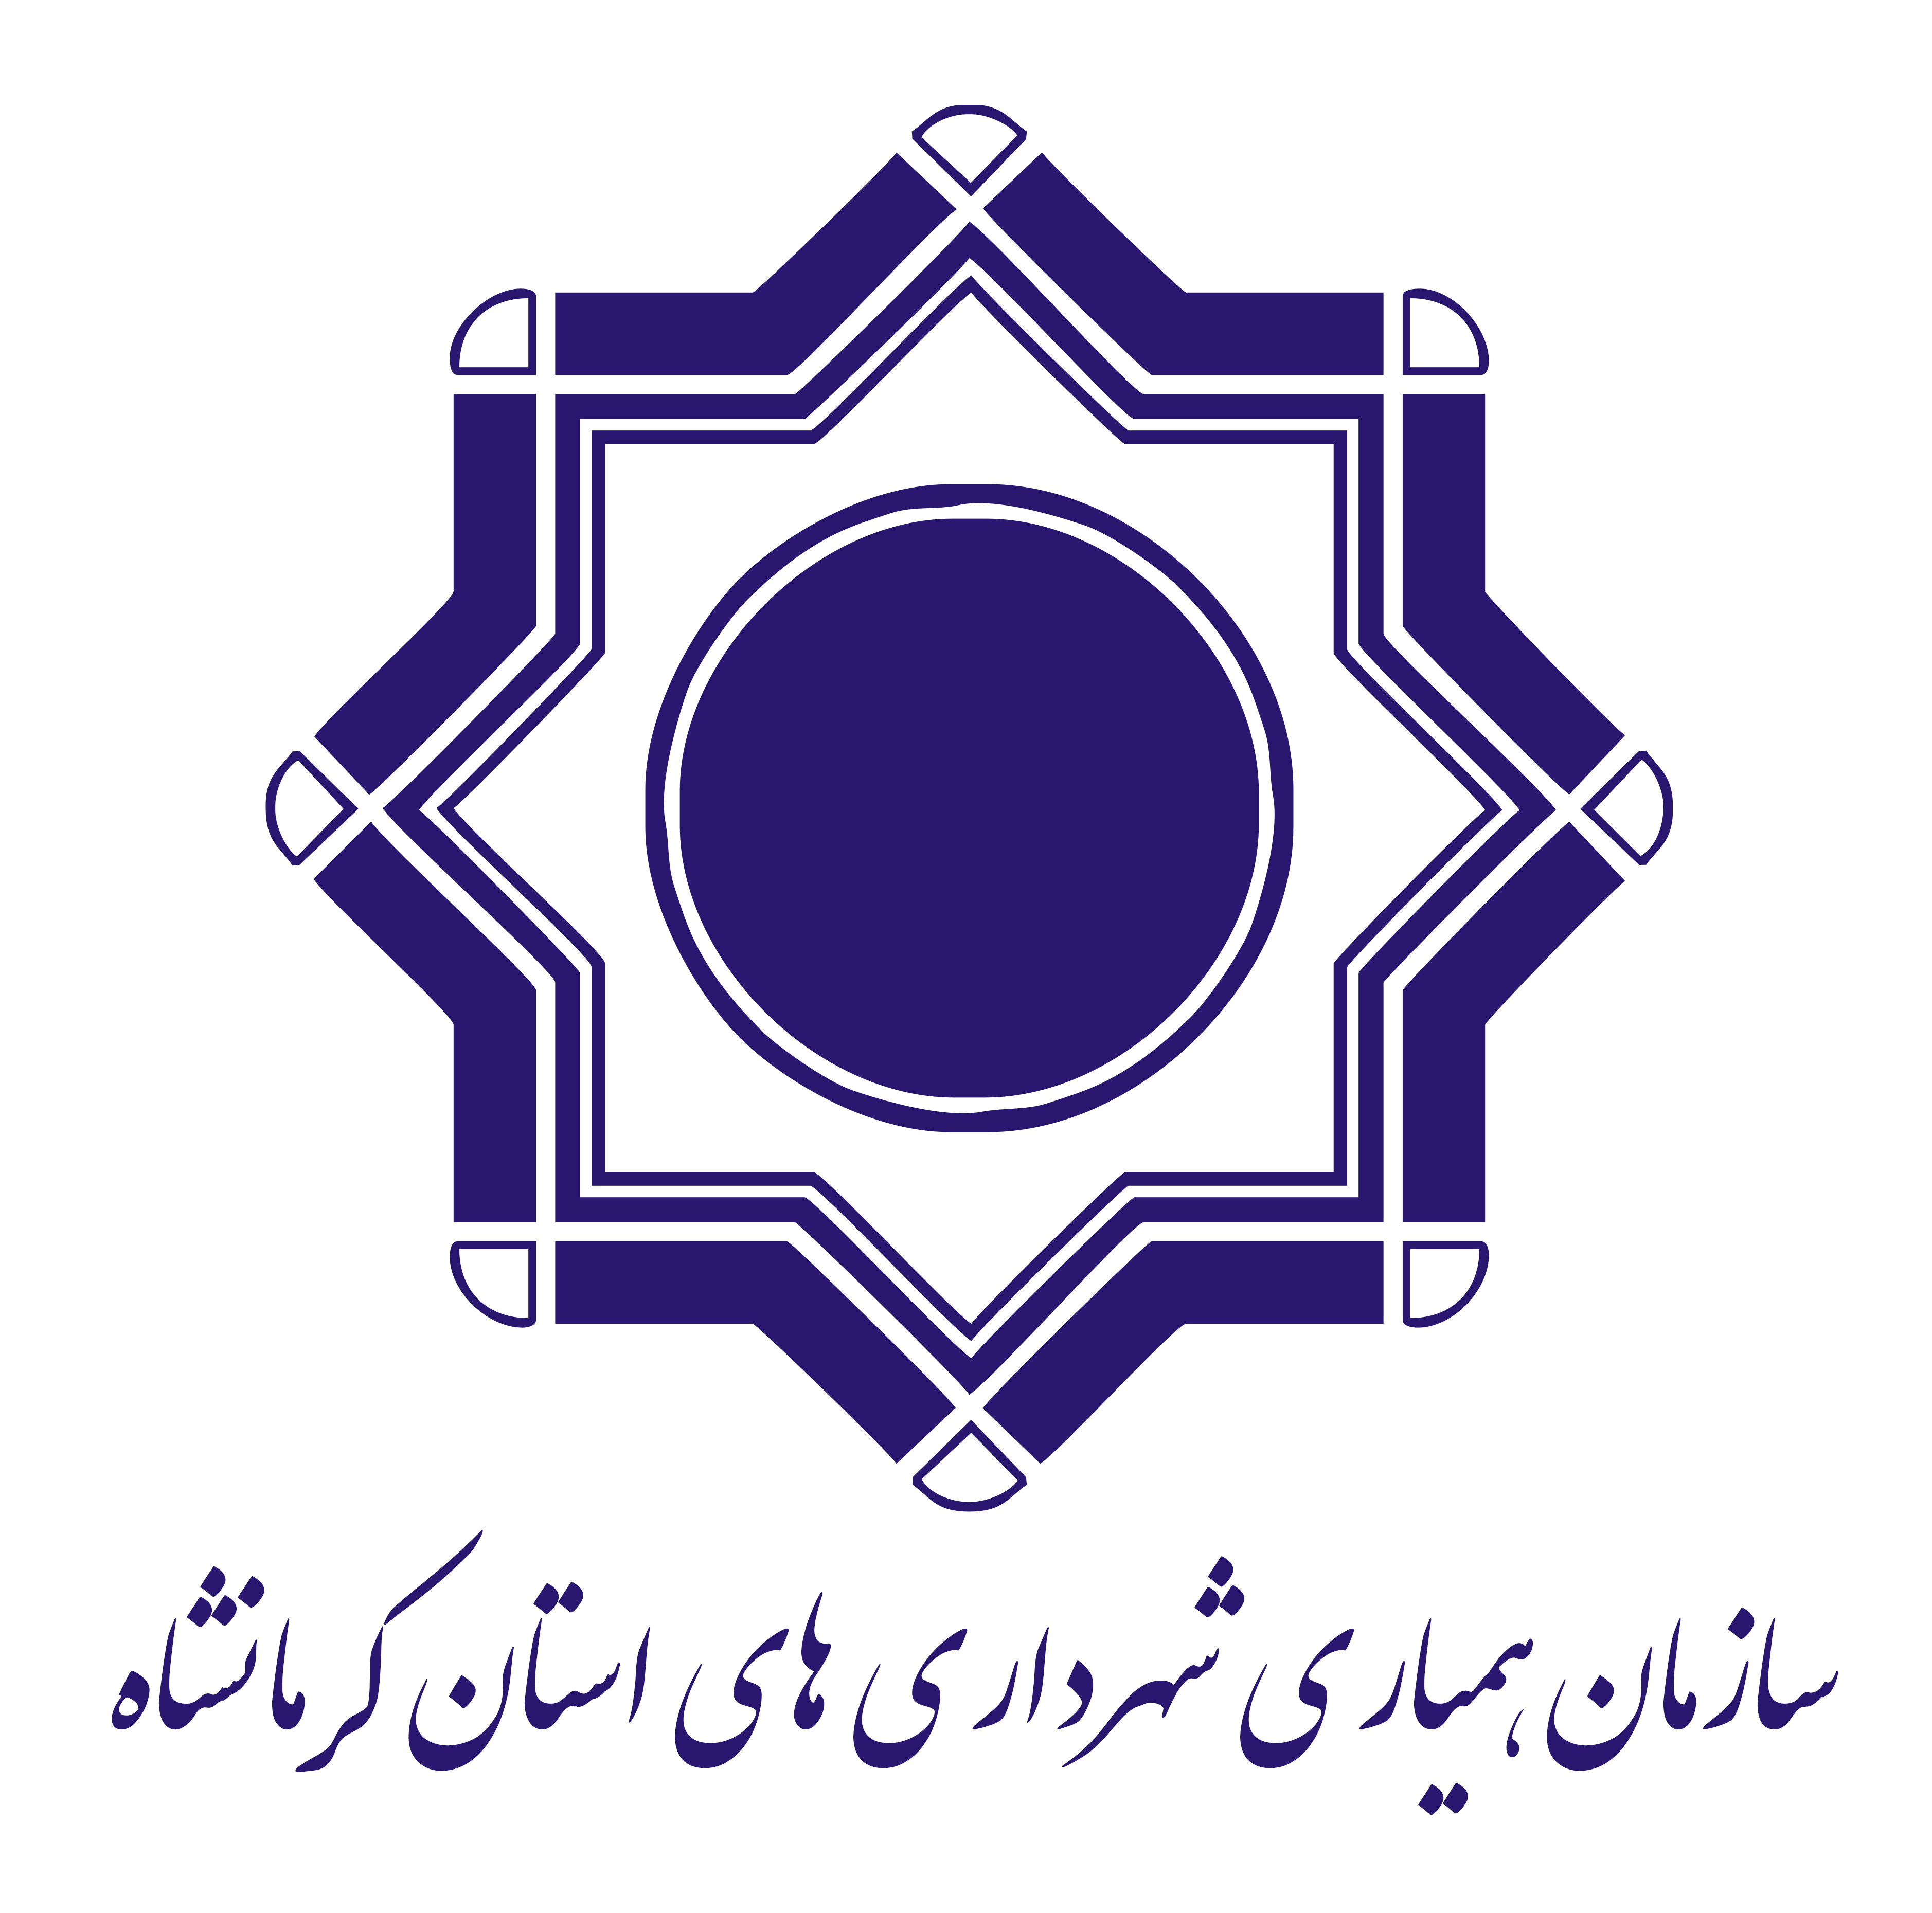 سازمان همیاری شهرداری های استان کرمانشاه